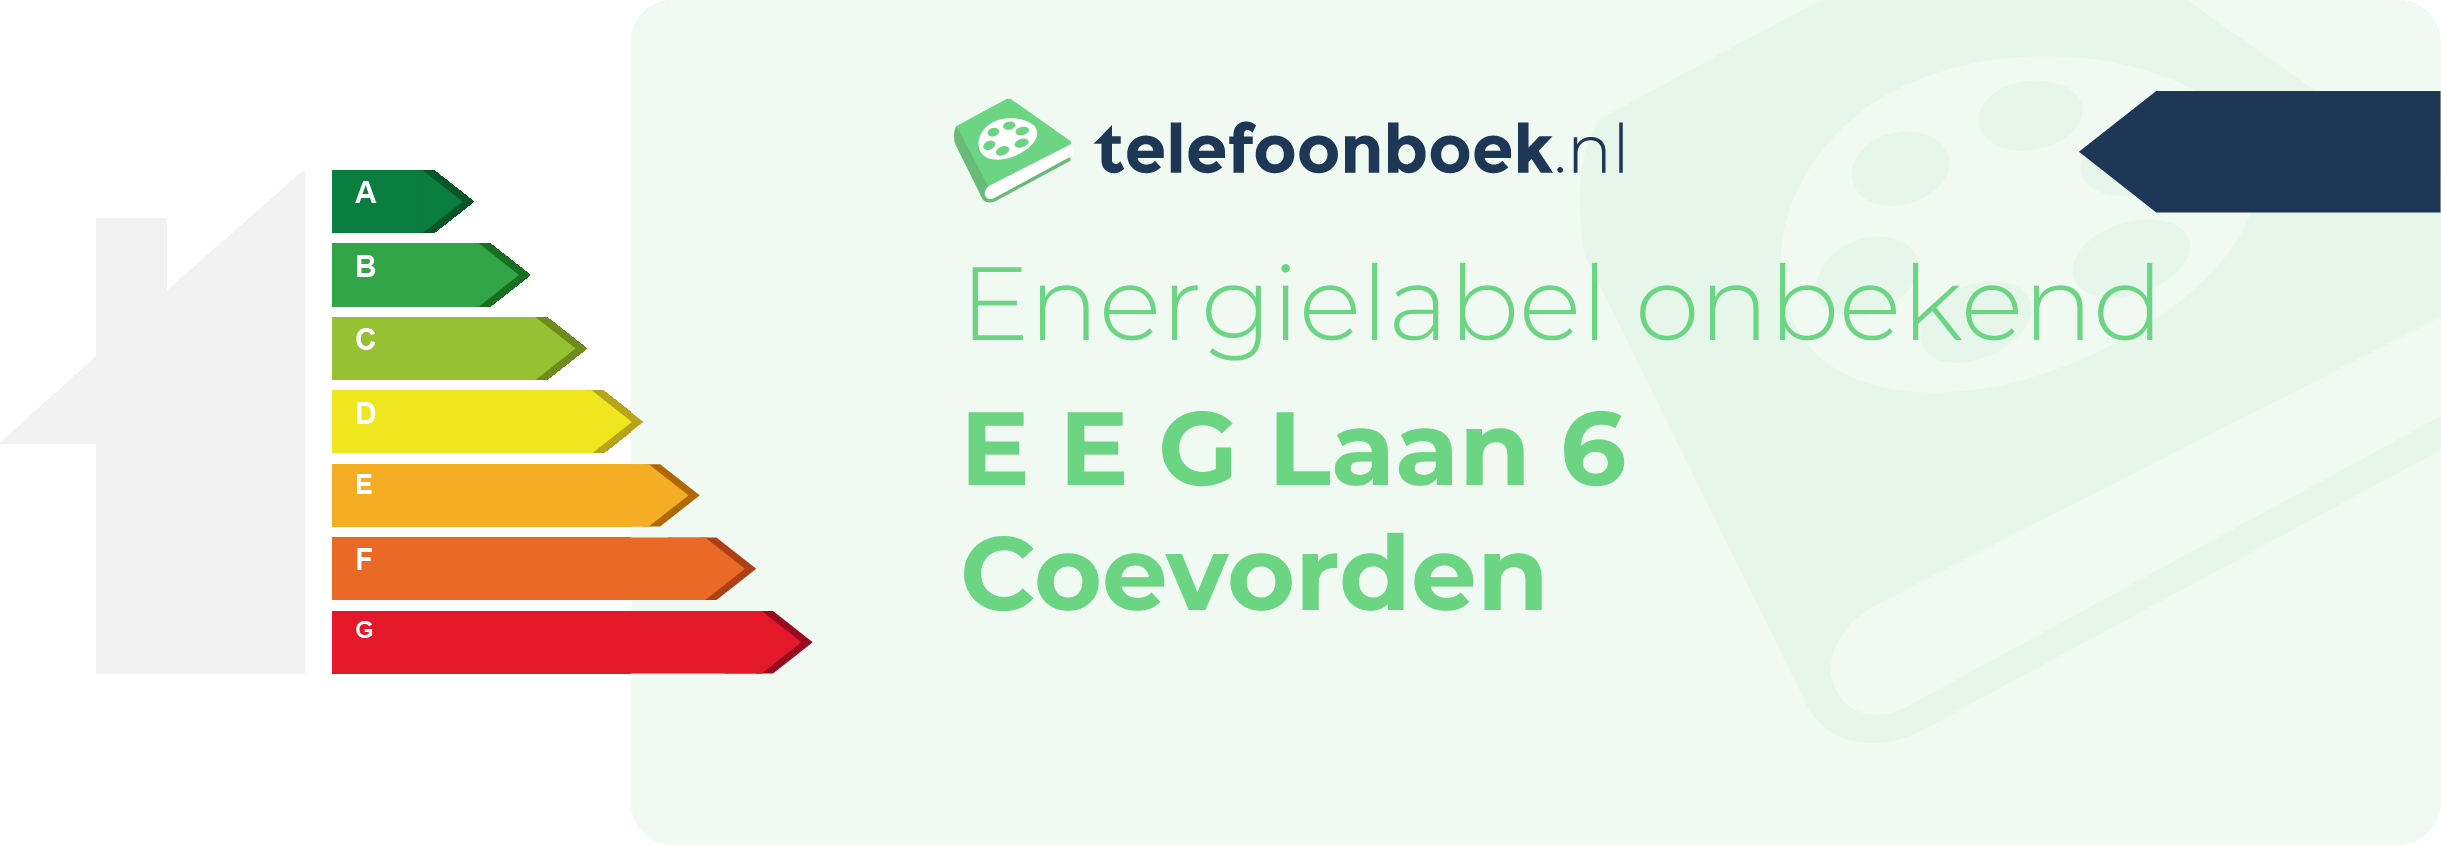 Energielabel E E G Laan 6 Coevorden